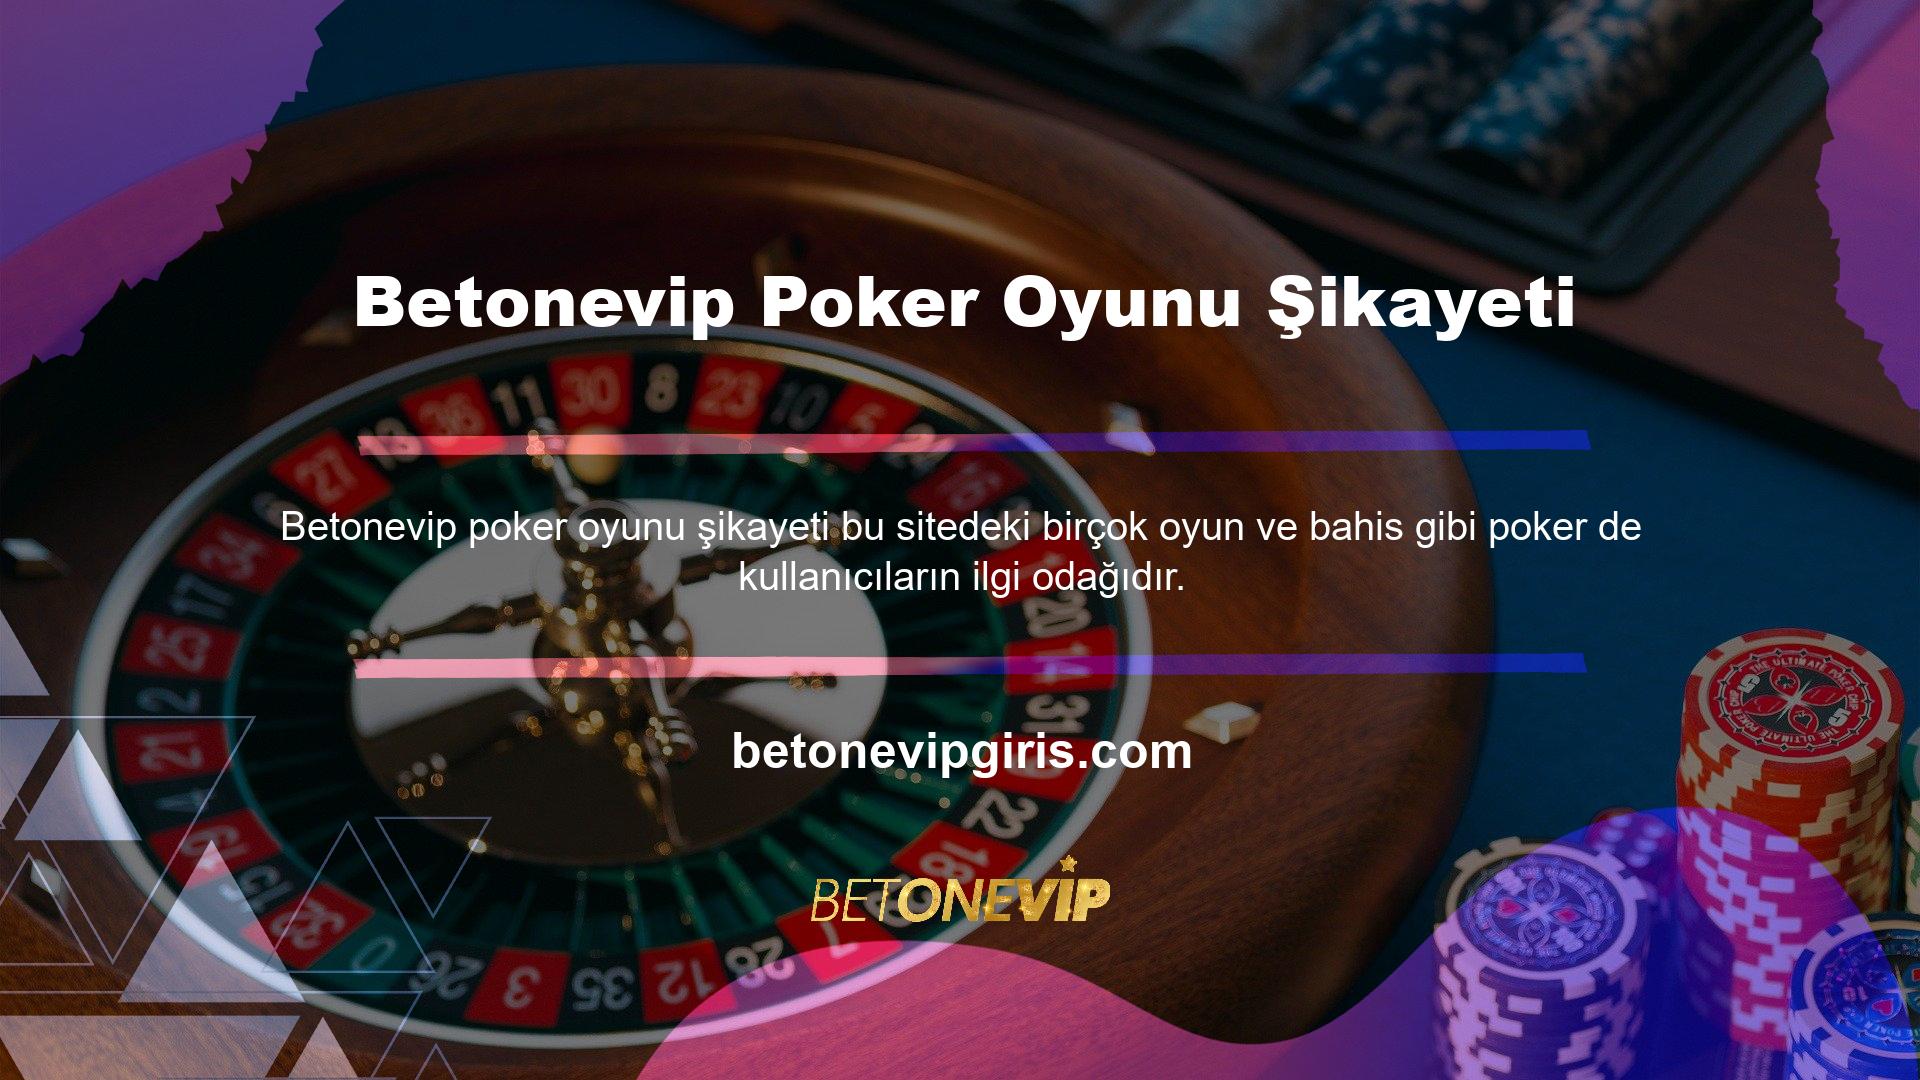 Site, çok çeşitli poker oyunları sunmaktadır ve en popüler casino oyunlarından biridir